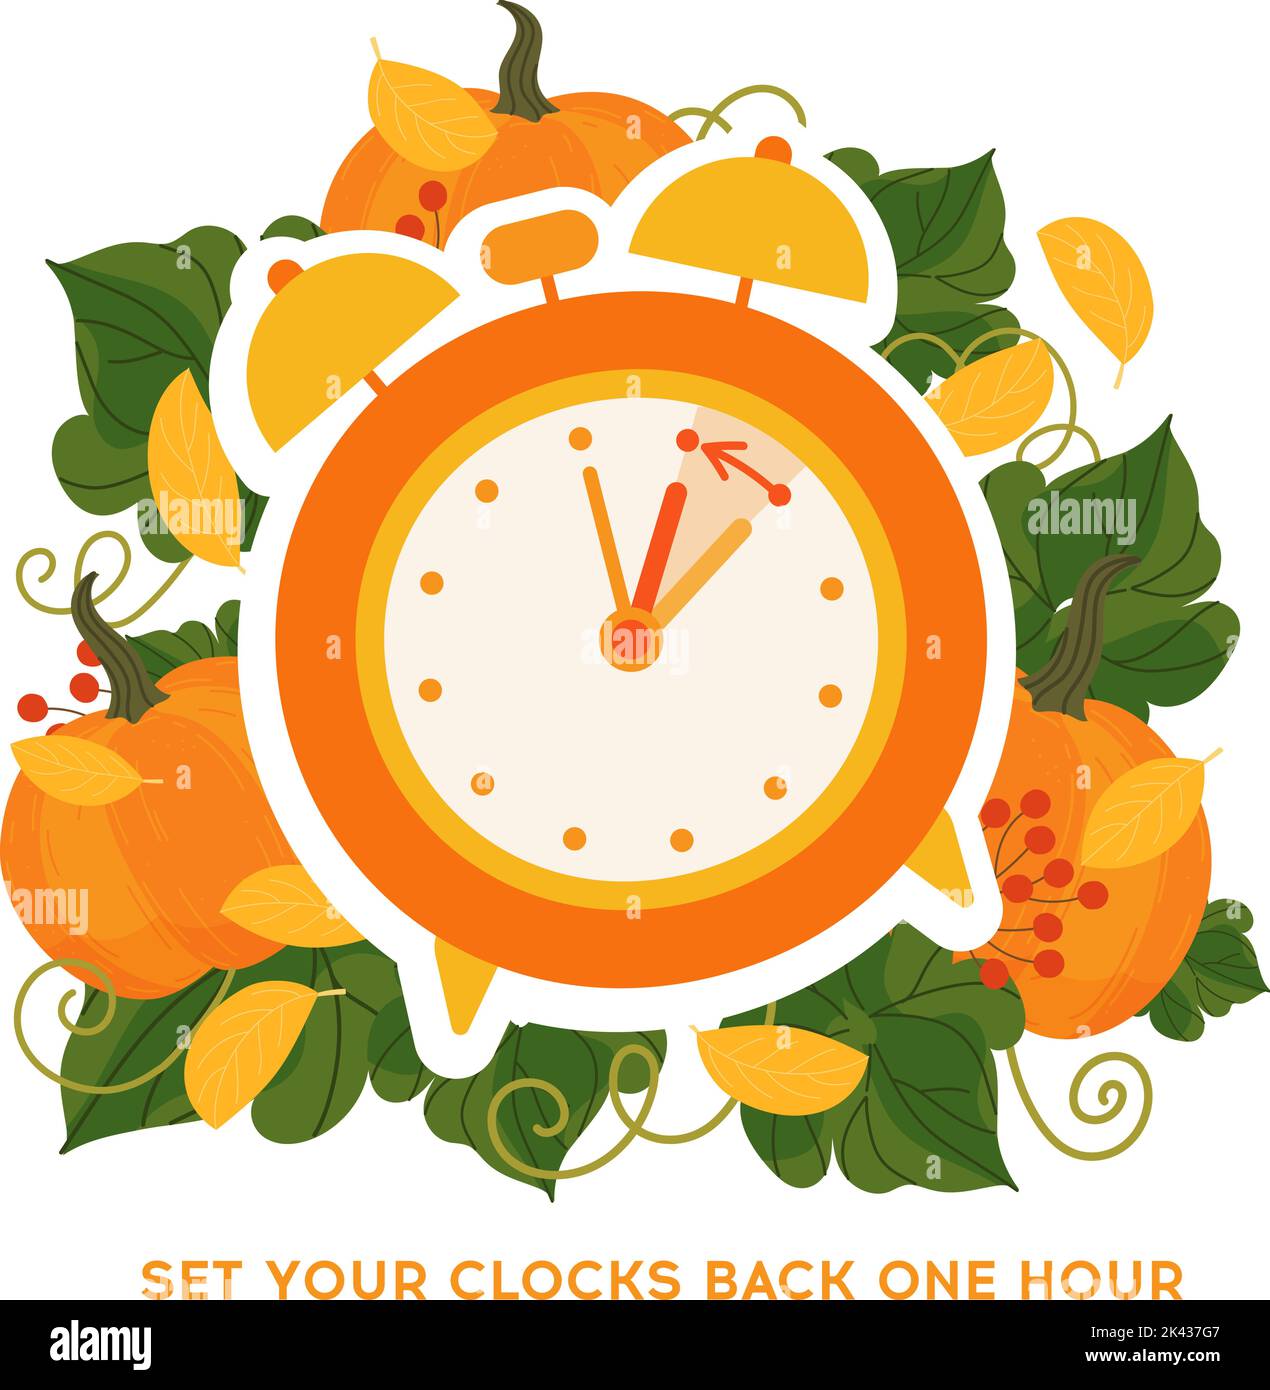 Turn Back the Clock, Turn Up the Orange!